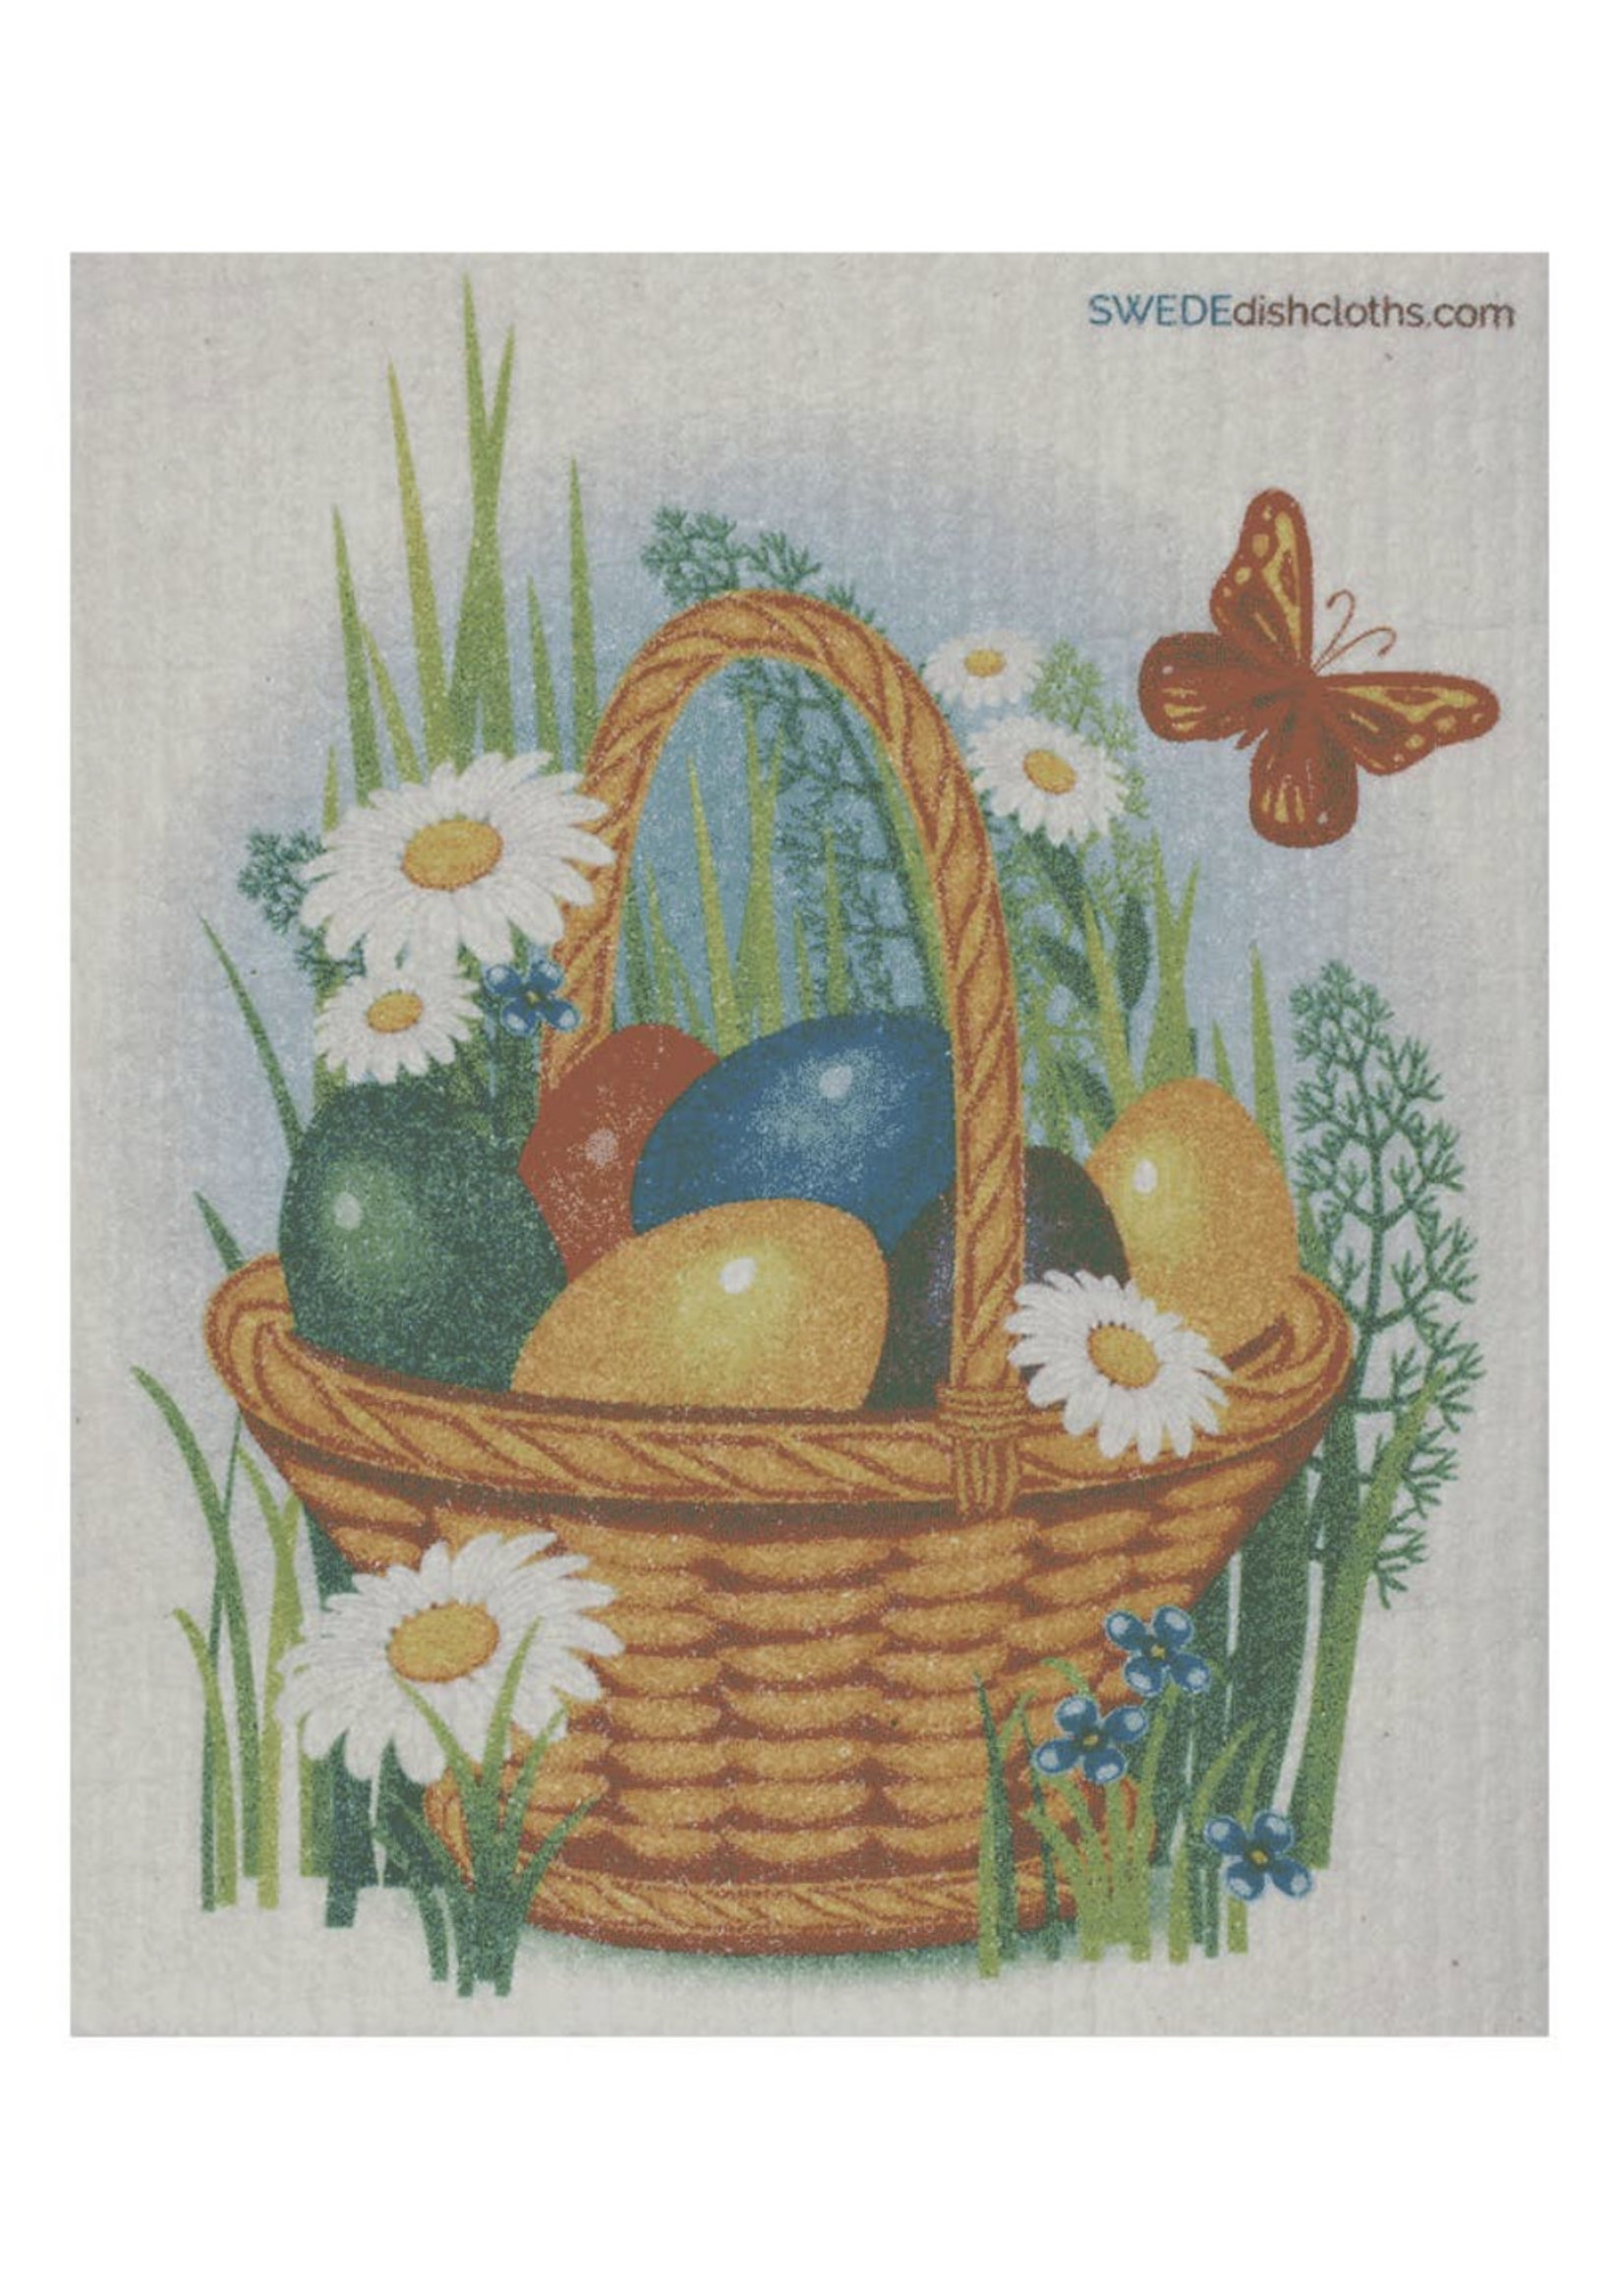 SWEDEdishcloths Swedish Dishcloth - Spring